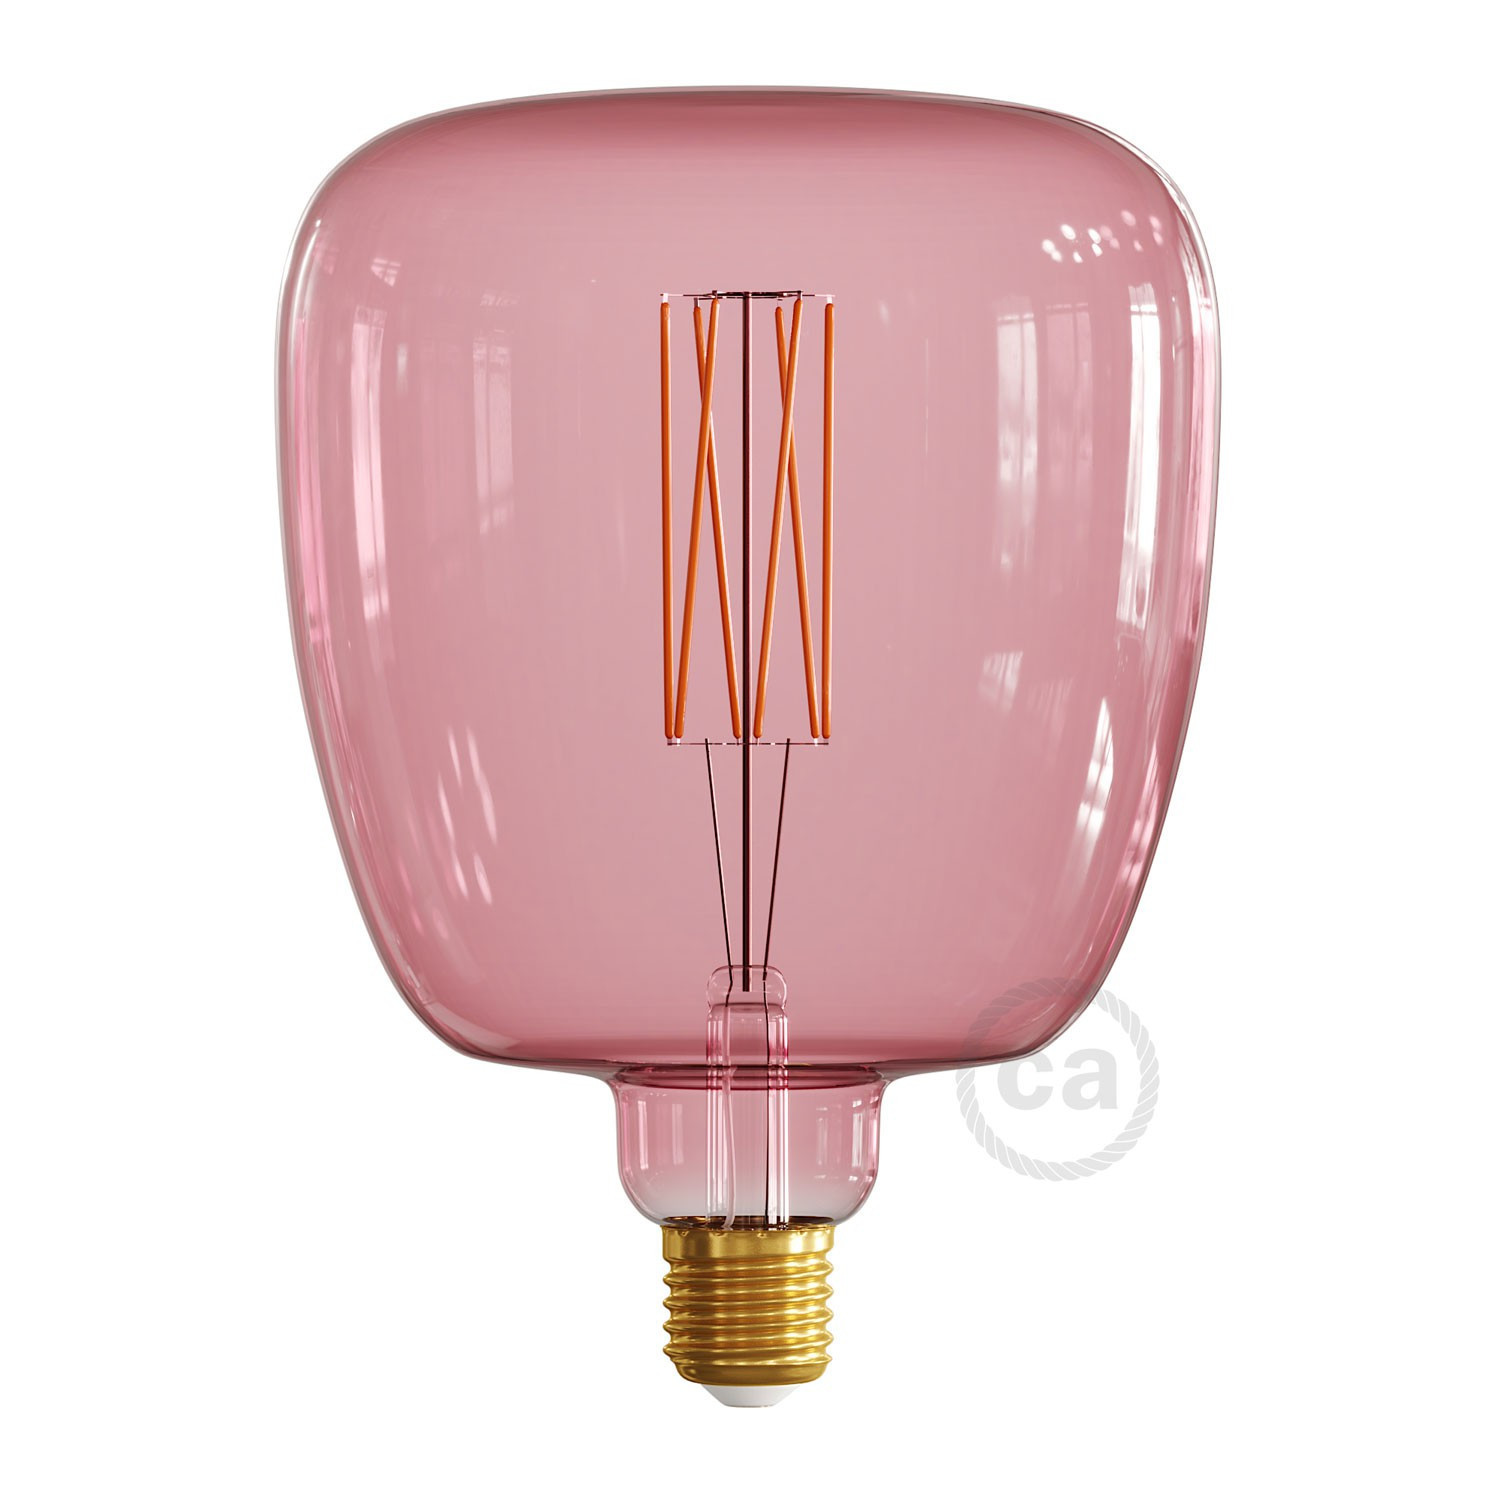 Lampadina LED XXL Bona linea Pastel Berry Red filamento Dritto 4W 100Lm E27 2200K Dimmerabile